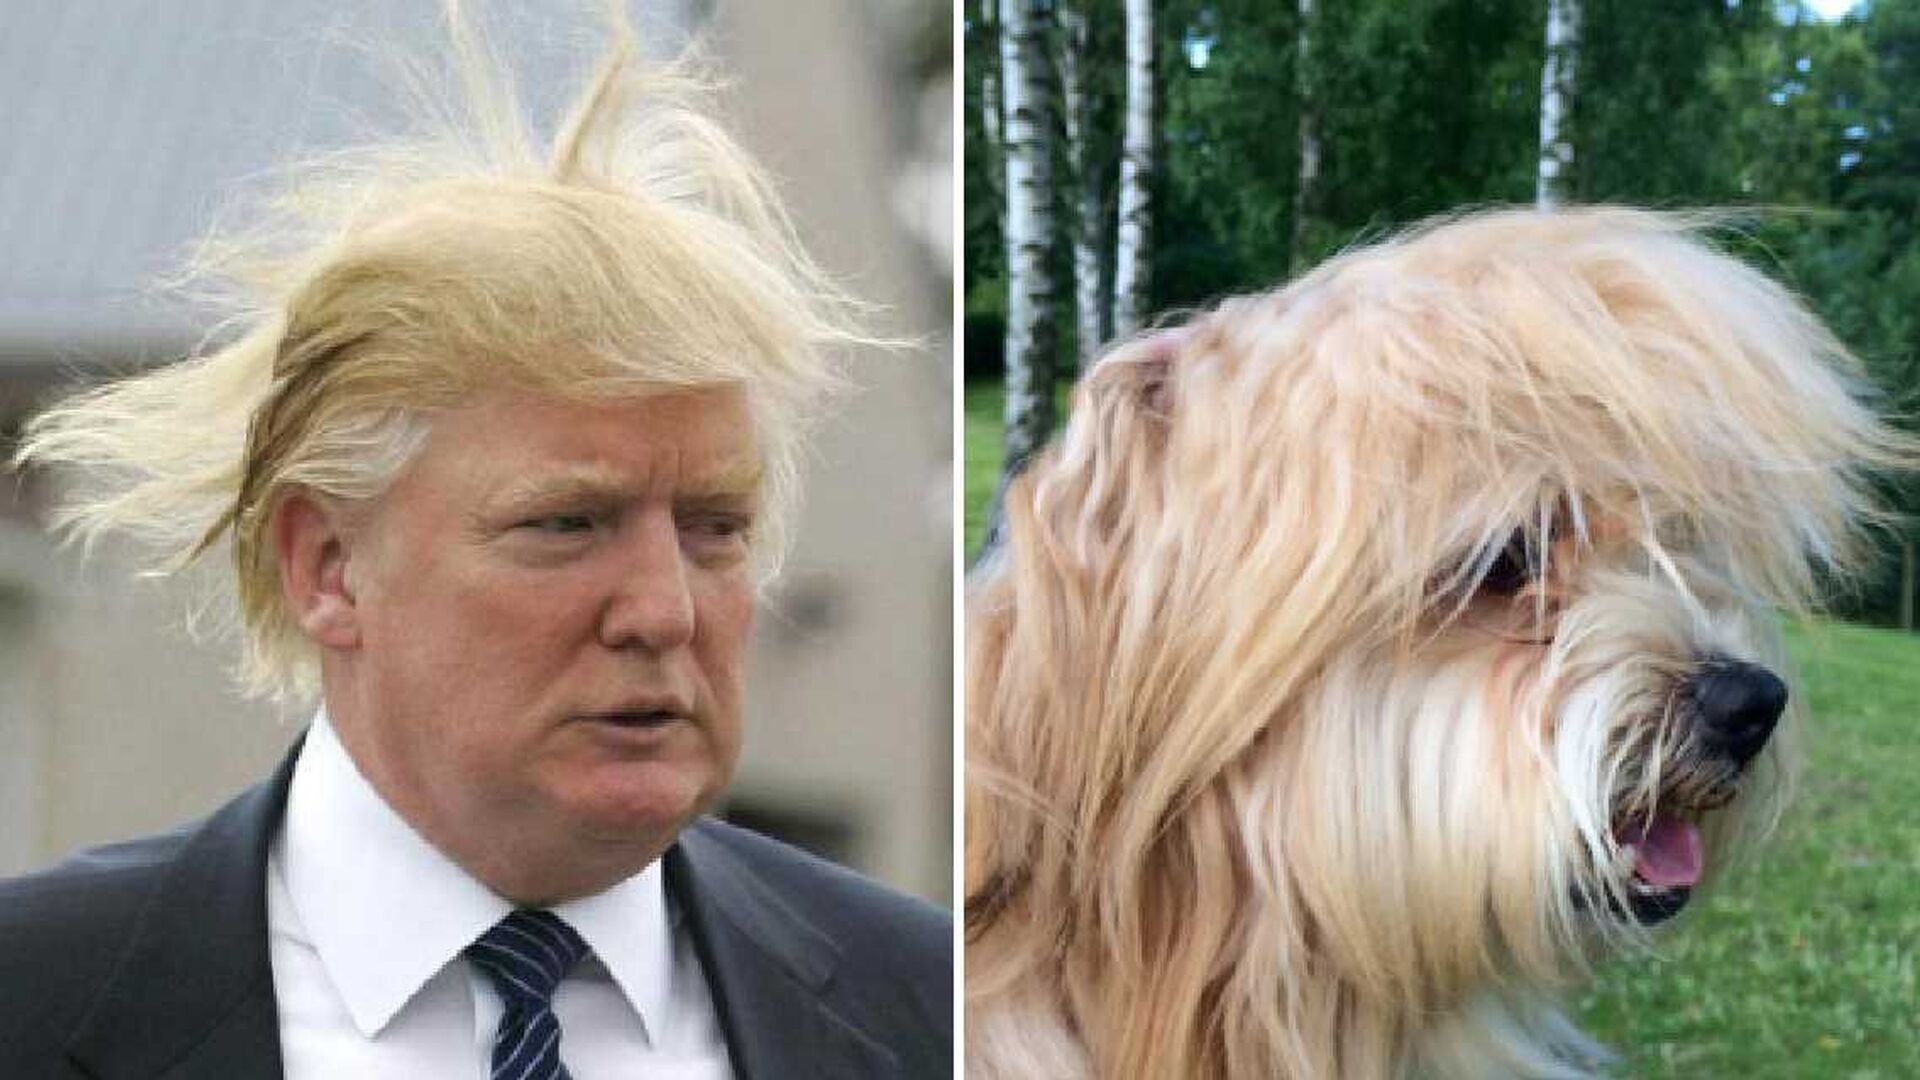 Al doble de cuatro patas de Donald Trump tambi&eacute;n se le mueve el peinado cuando hace viento.